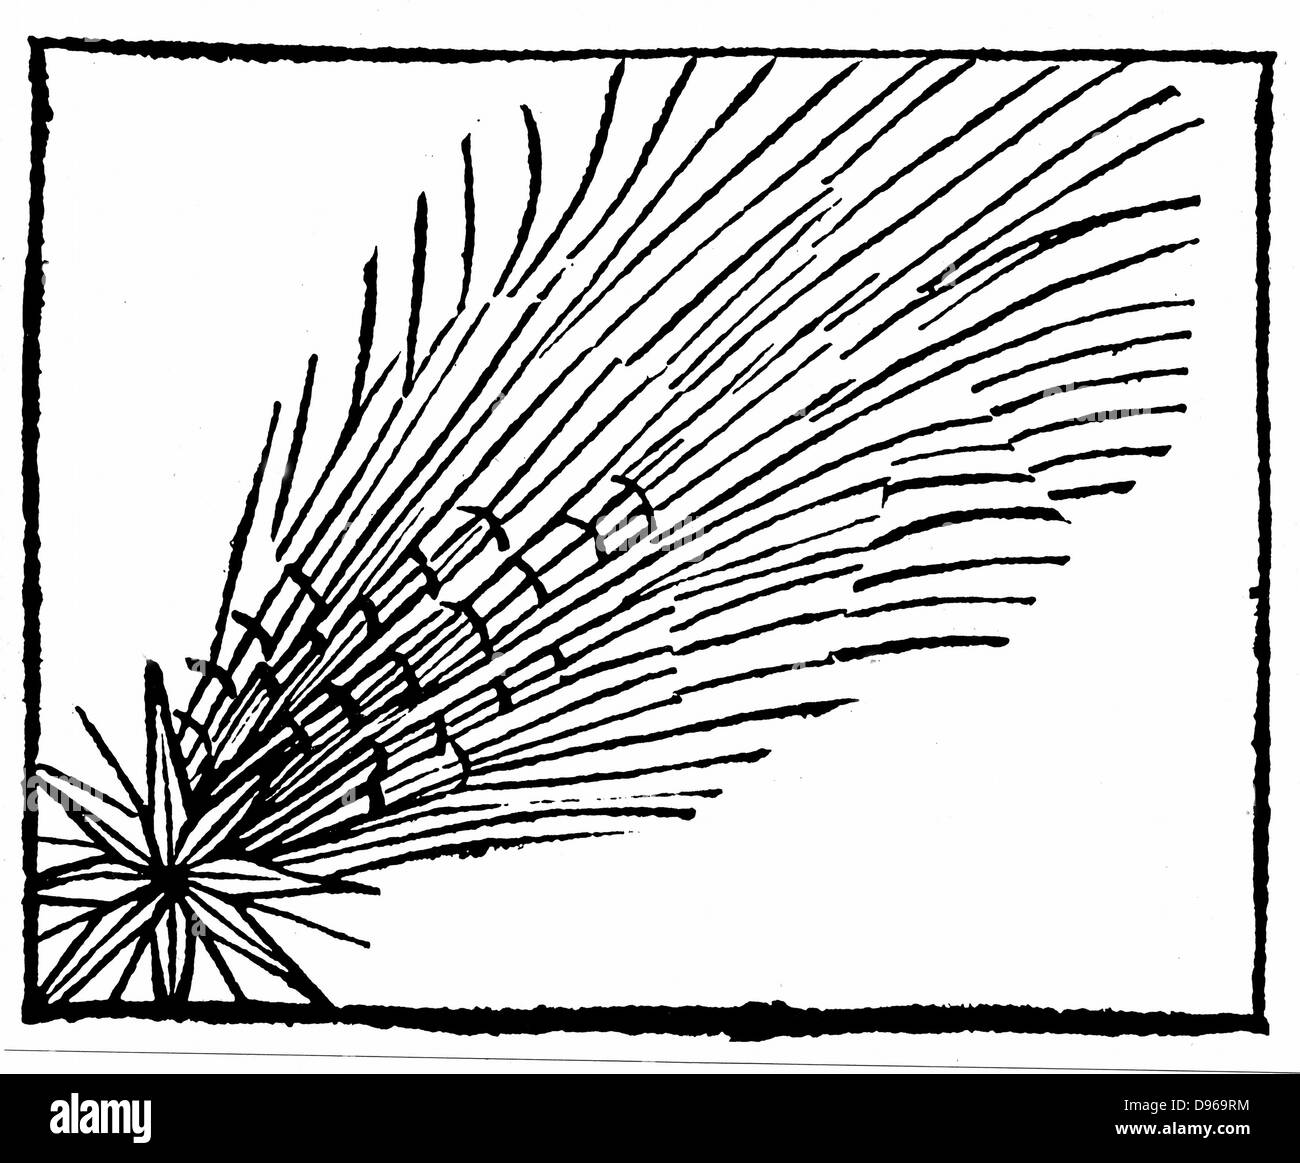 La comète de Halley (684). De Hartmann Schedel 'Liber Chronicarum mundi' (Chronique de Nuremberg) 1493. Gravure sur bois. Banque D'Images